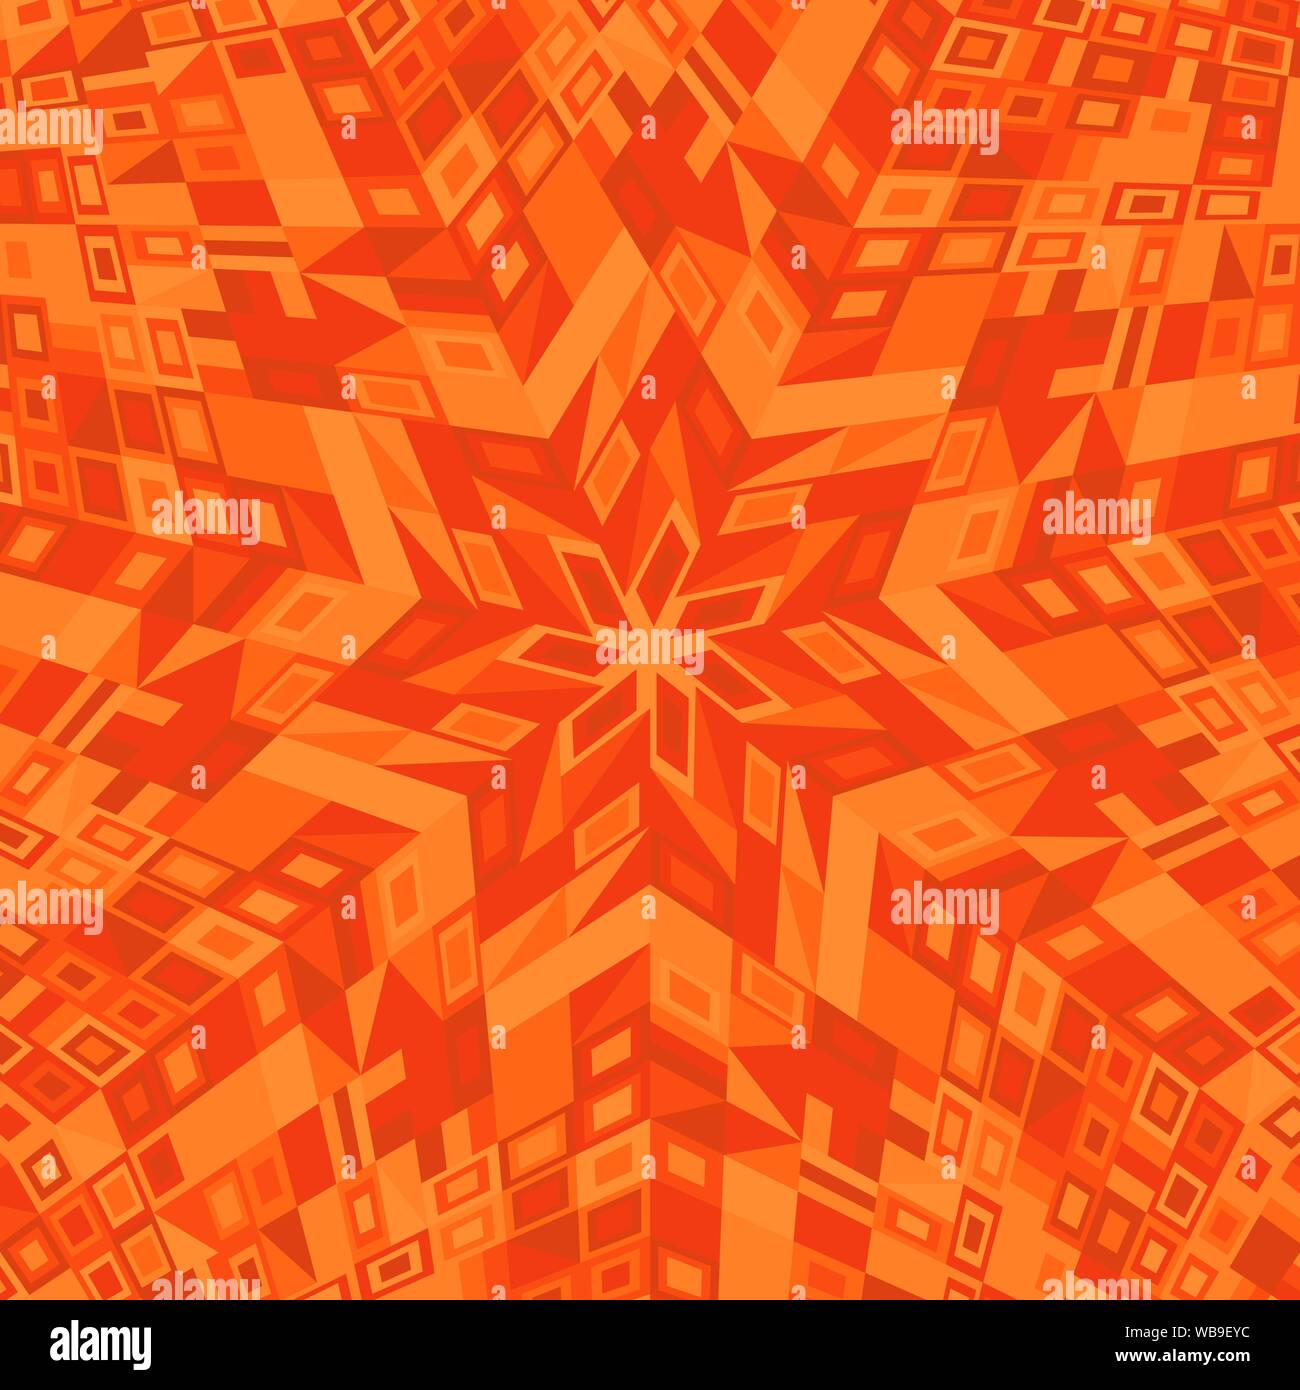 Dynamische geometrische kreisförmige Mosaik Muster Hintergrund Design - abstrakte farbenfrohe Vektorgrafik aus geometrischen Formen Stock Vektor